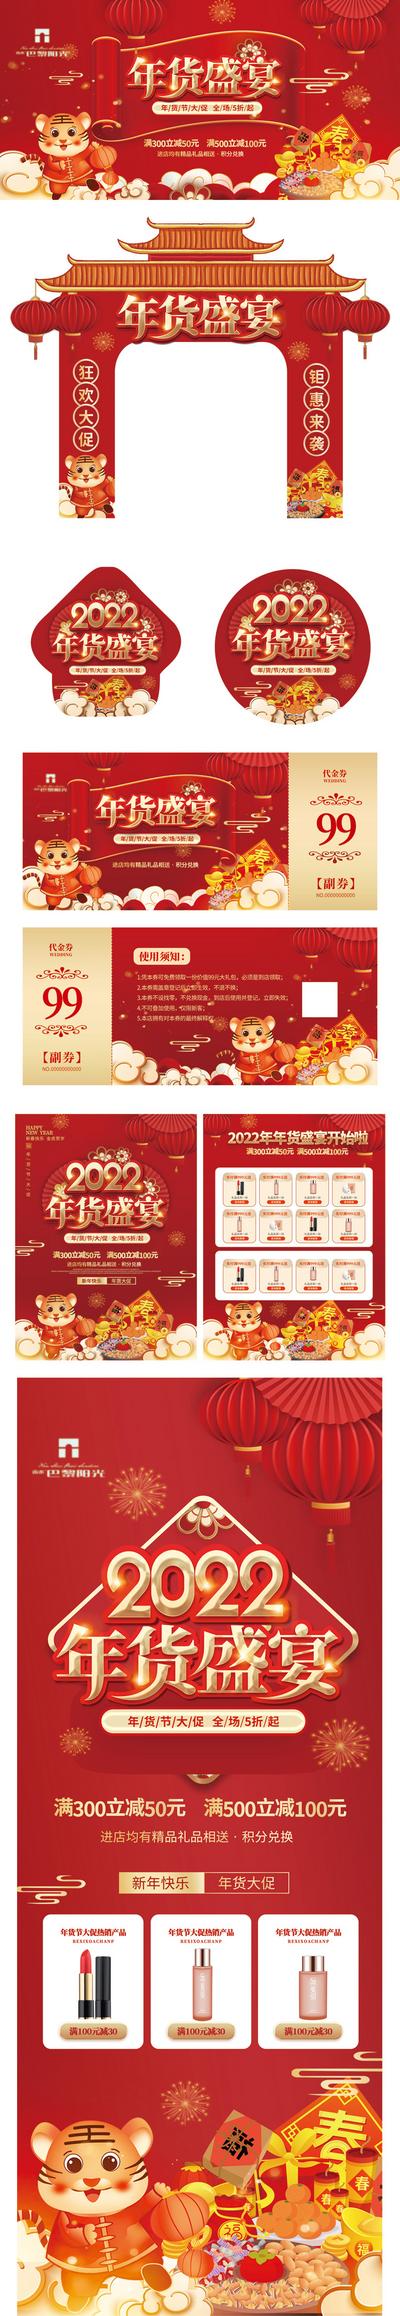 南门网 海报  房地产  新年快乐   2022虎年  春节贺卡   红金   年货节   物料   简约 大气 